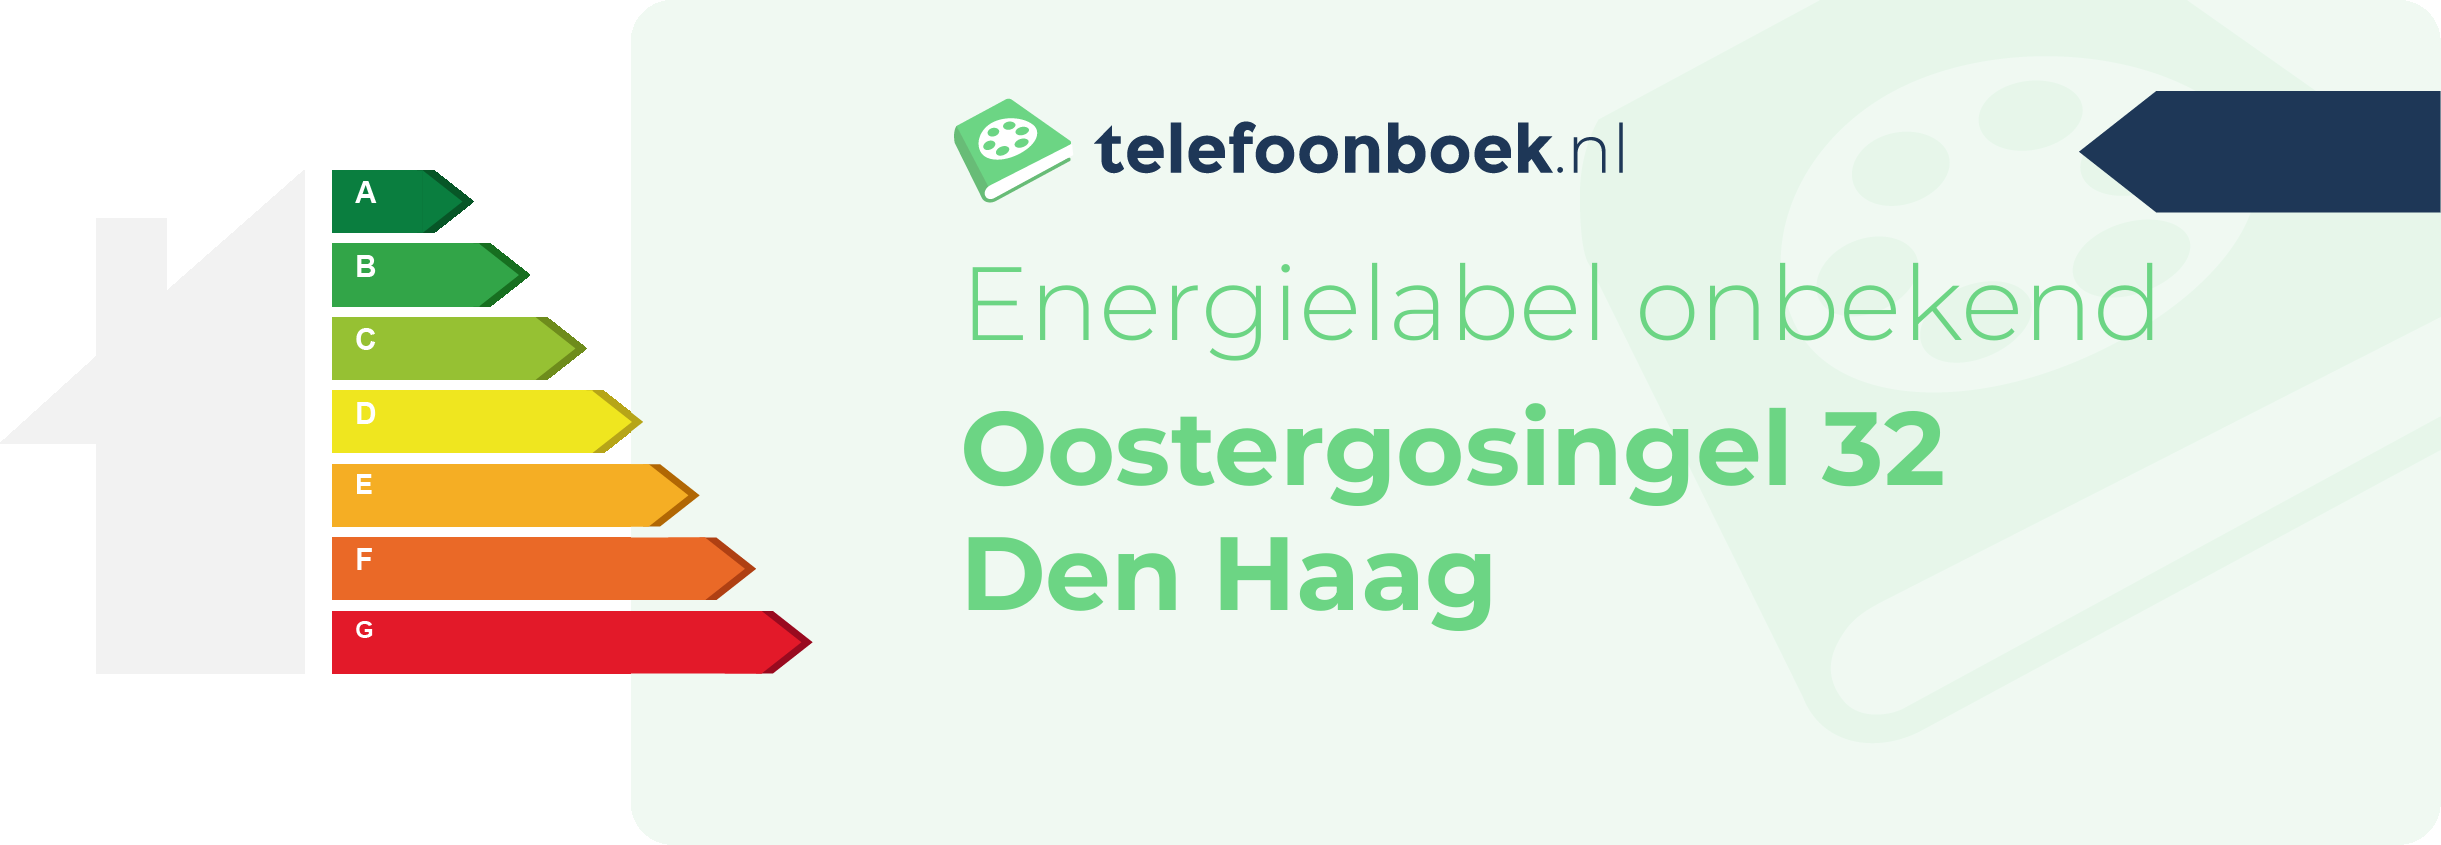 Energielabel Oostergosingel 32 Den Haag